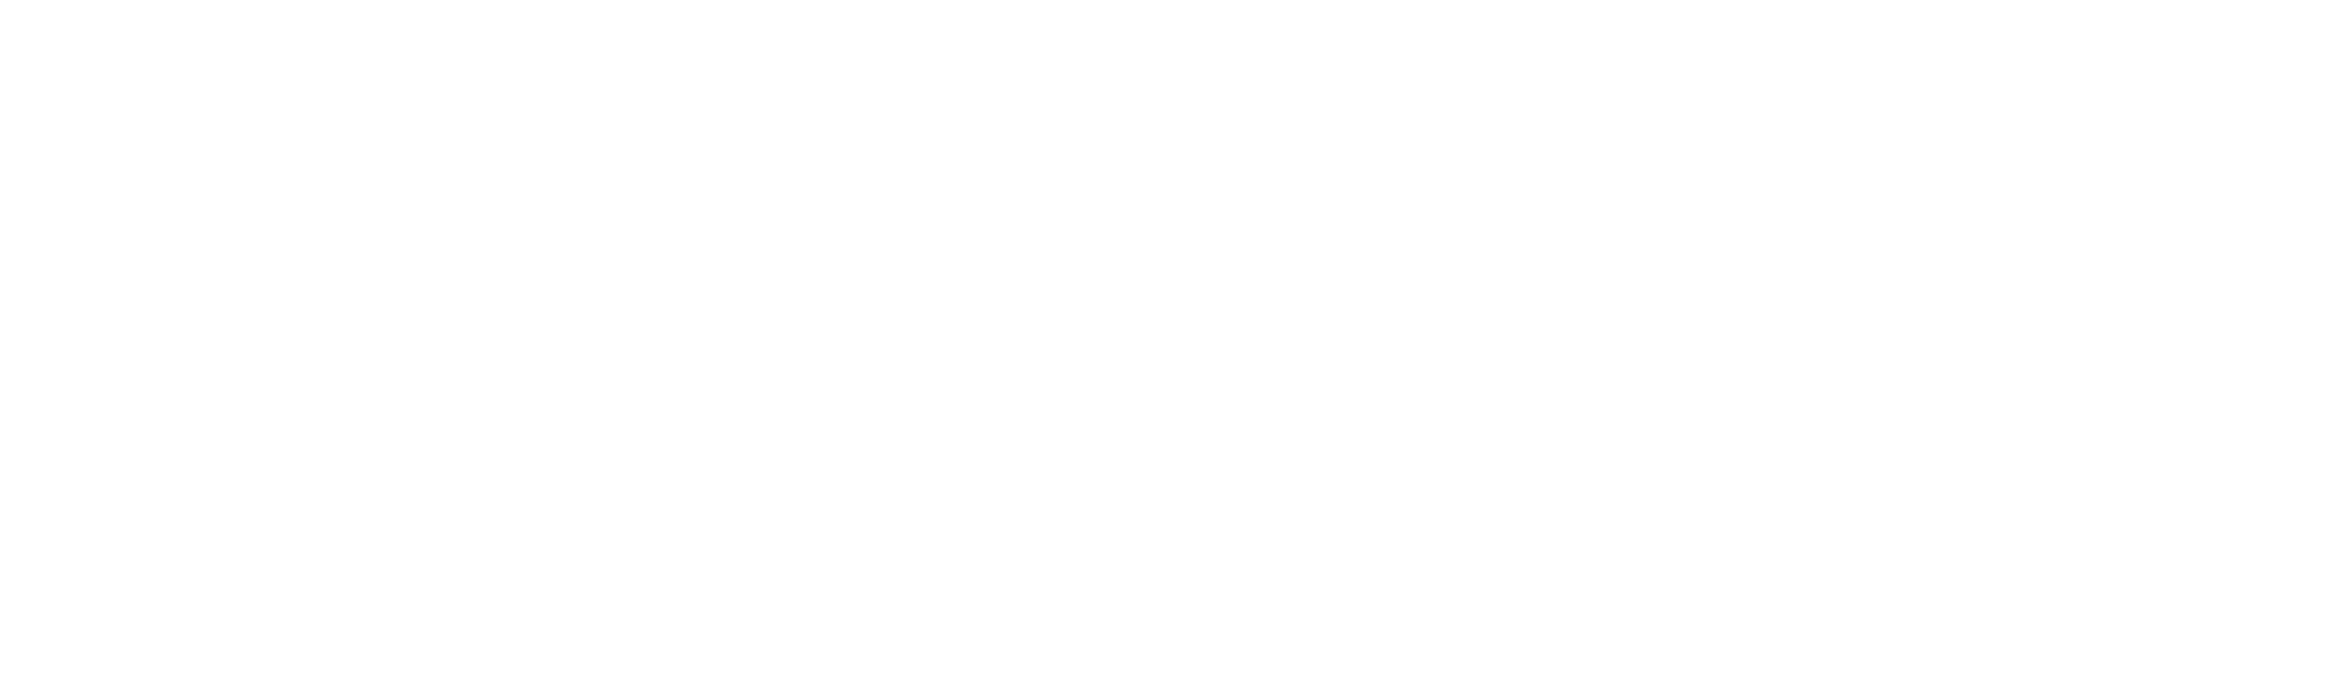 Future Church Leader